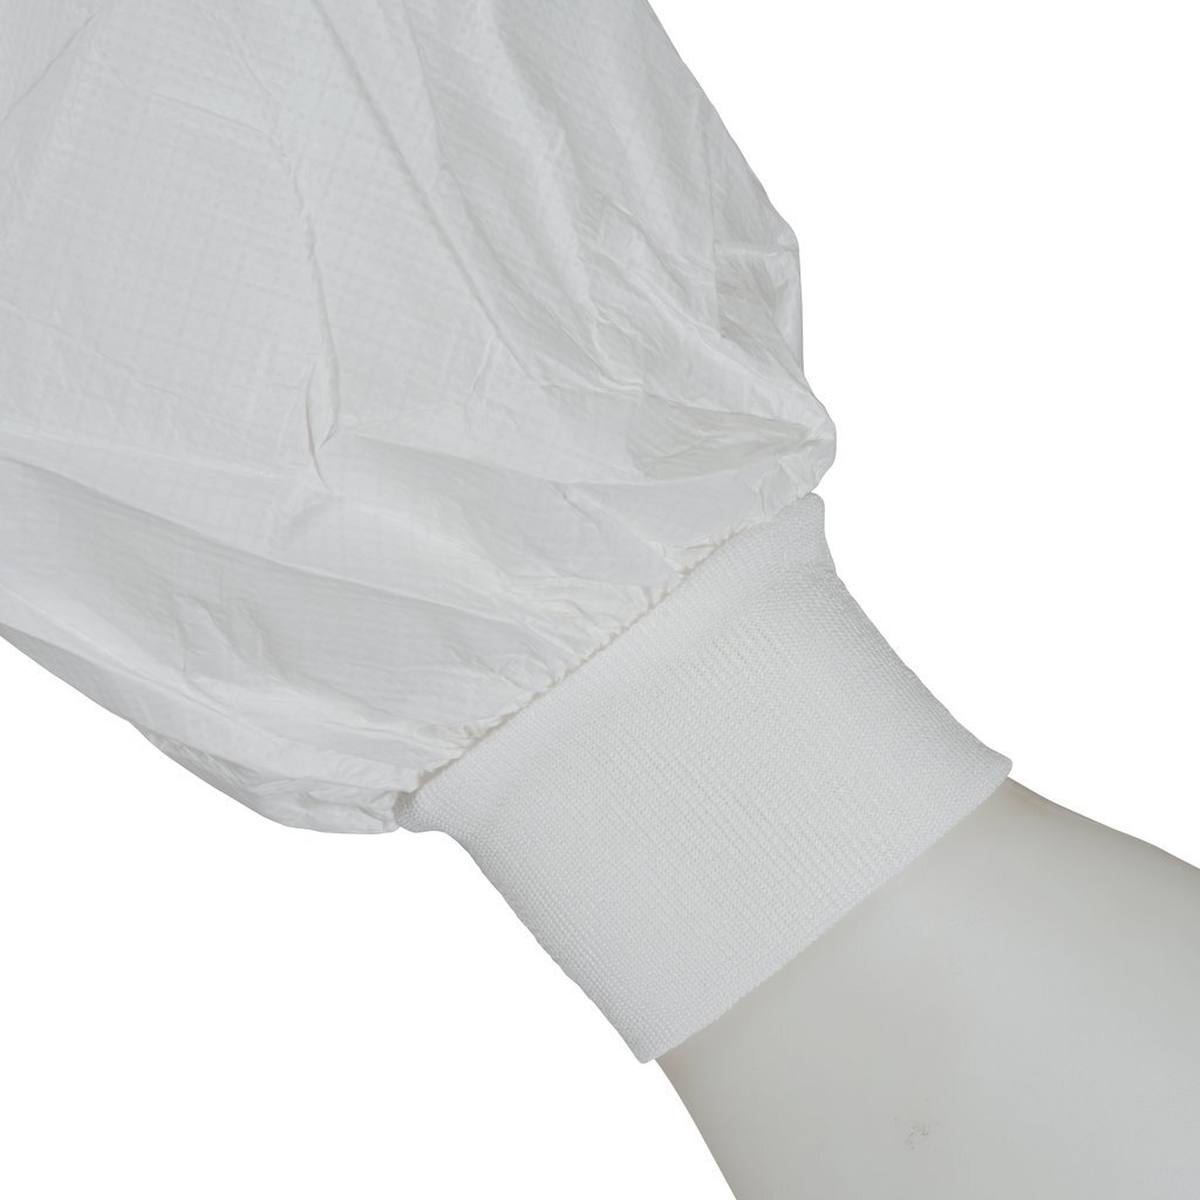 3M 4440 jas, wit, maat M, bijzonder ademend, zeer licht, met ritssluiting, gebreide manchetten